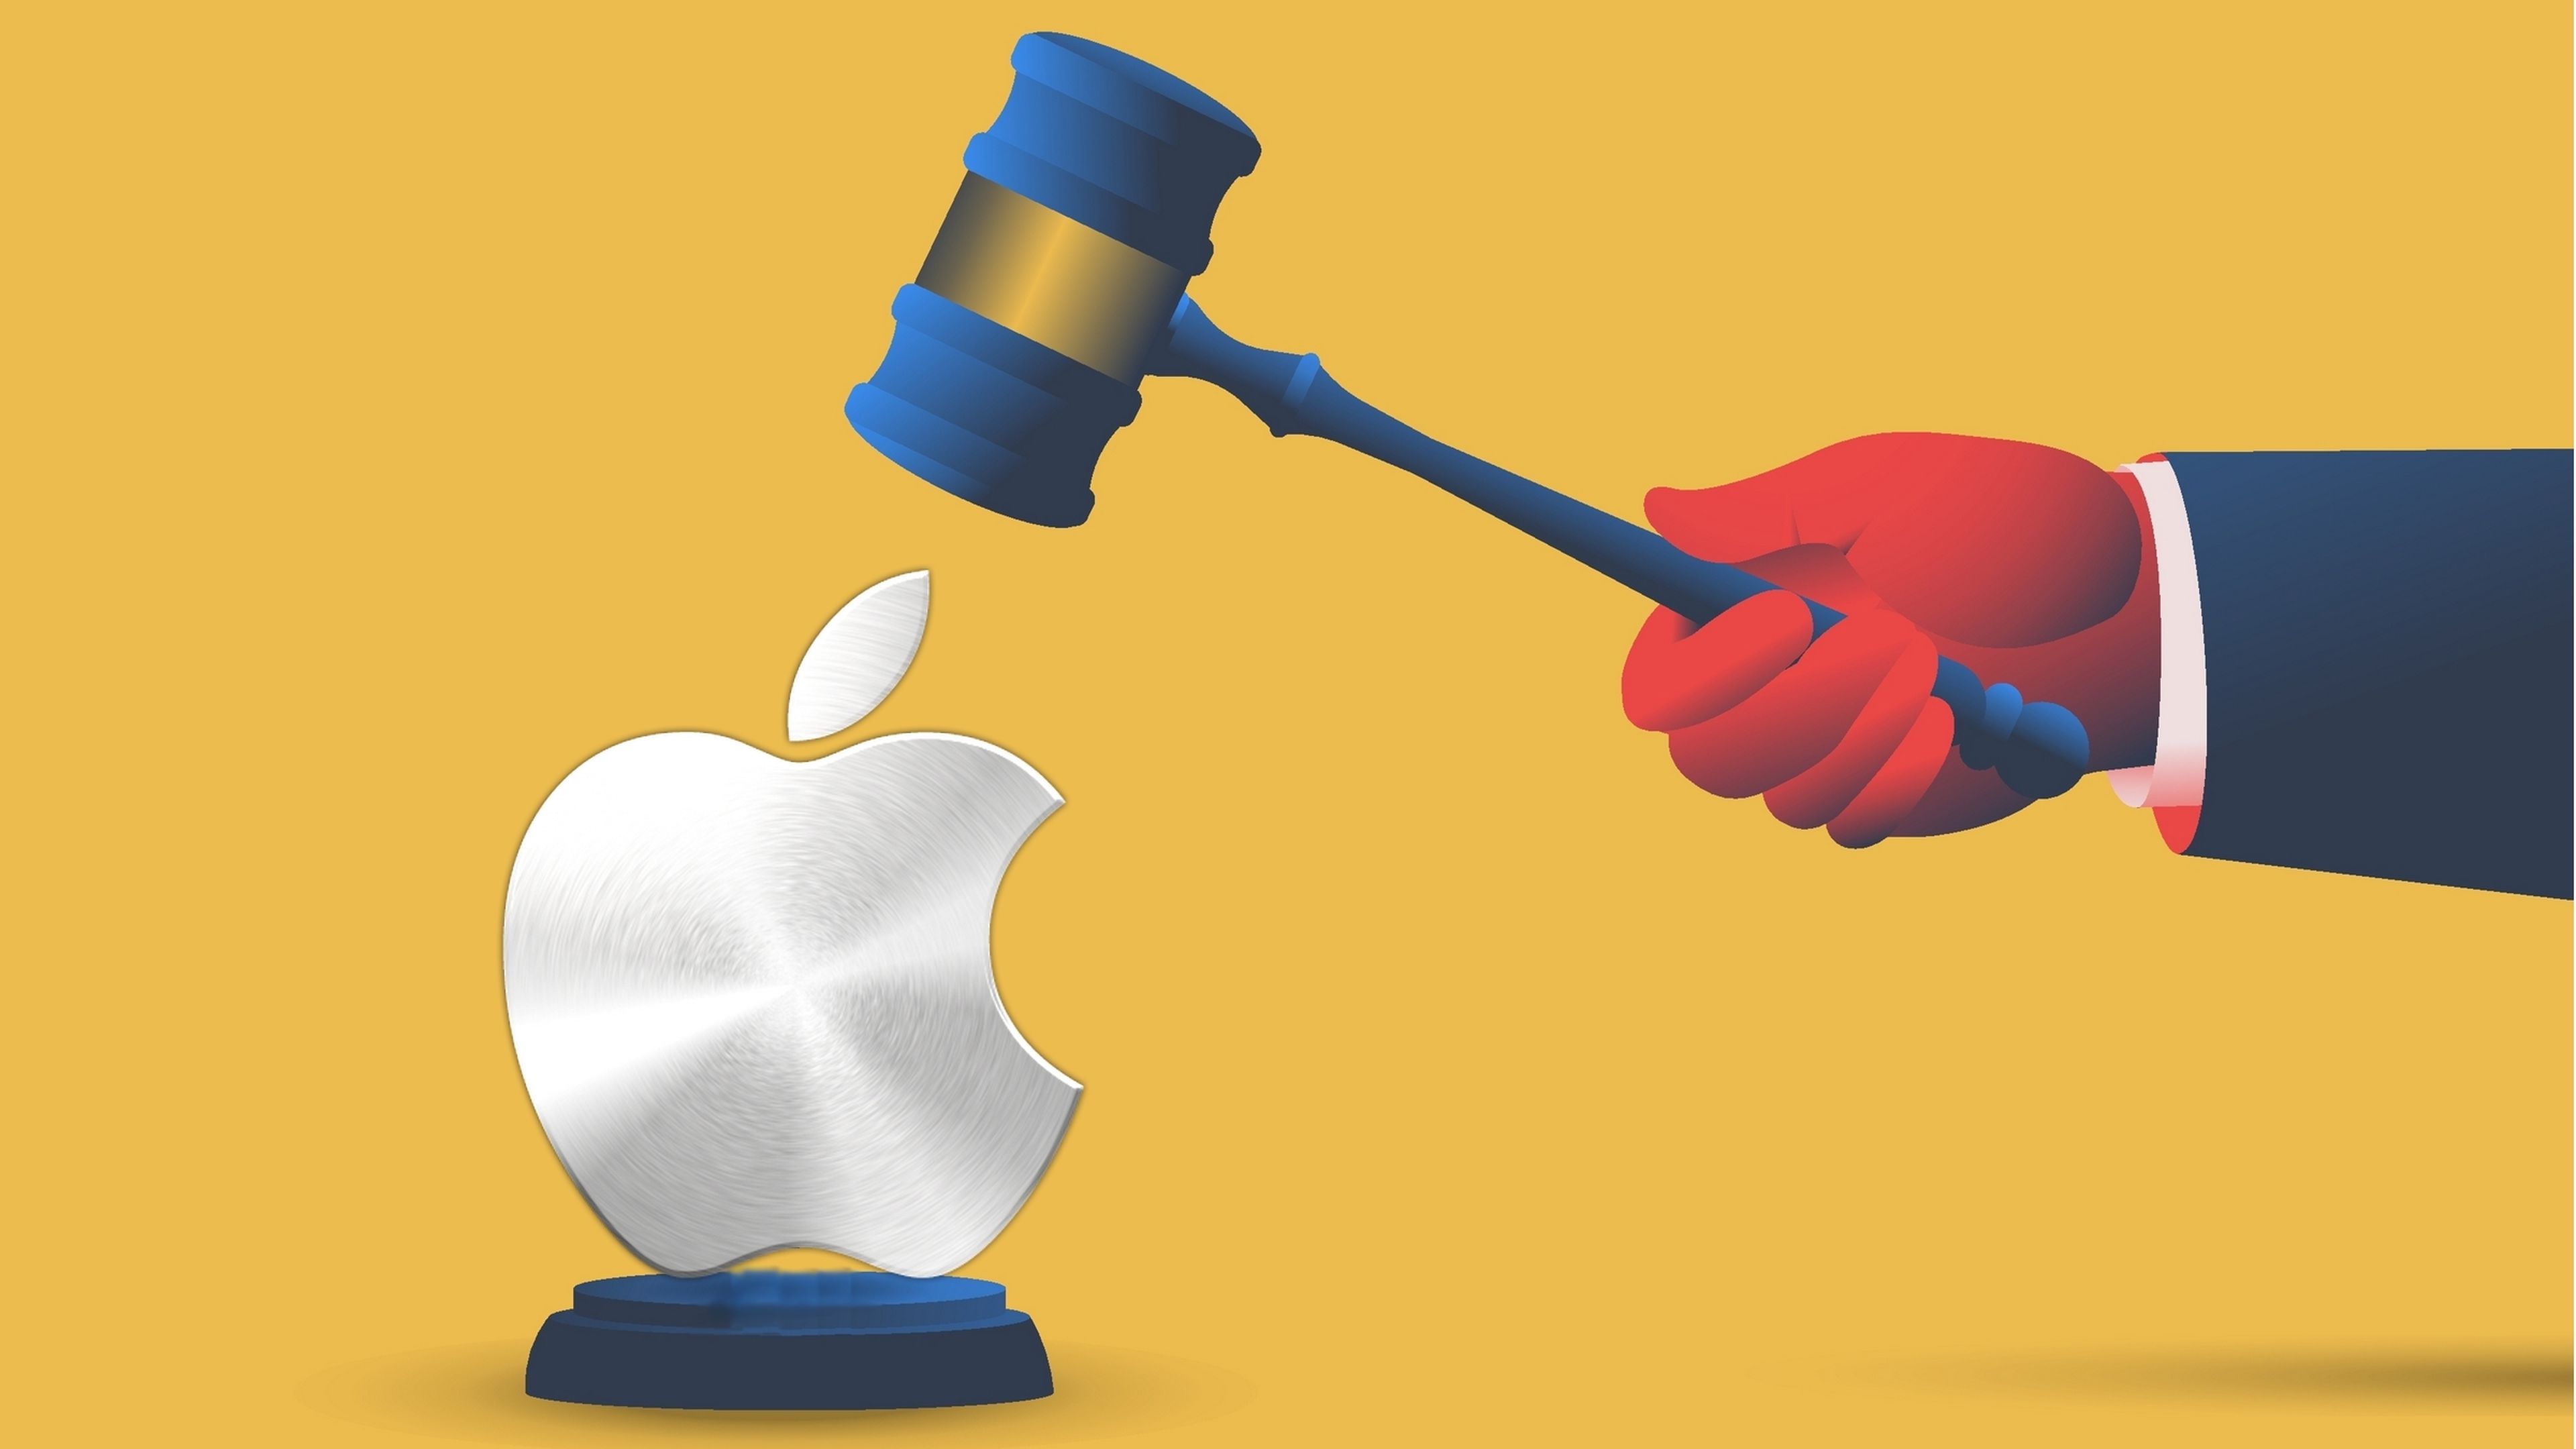 Siguiendo la estela de Europa, Estados Unidos denuncia a Apple y la acusa de monopolio ilegal